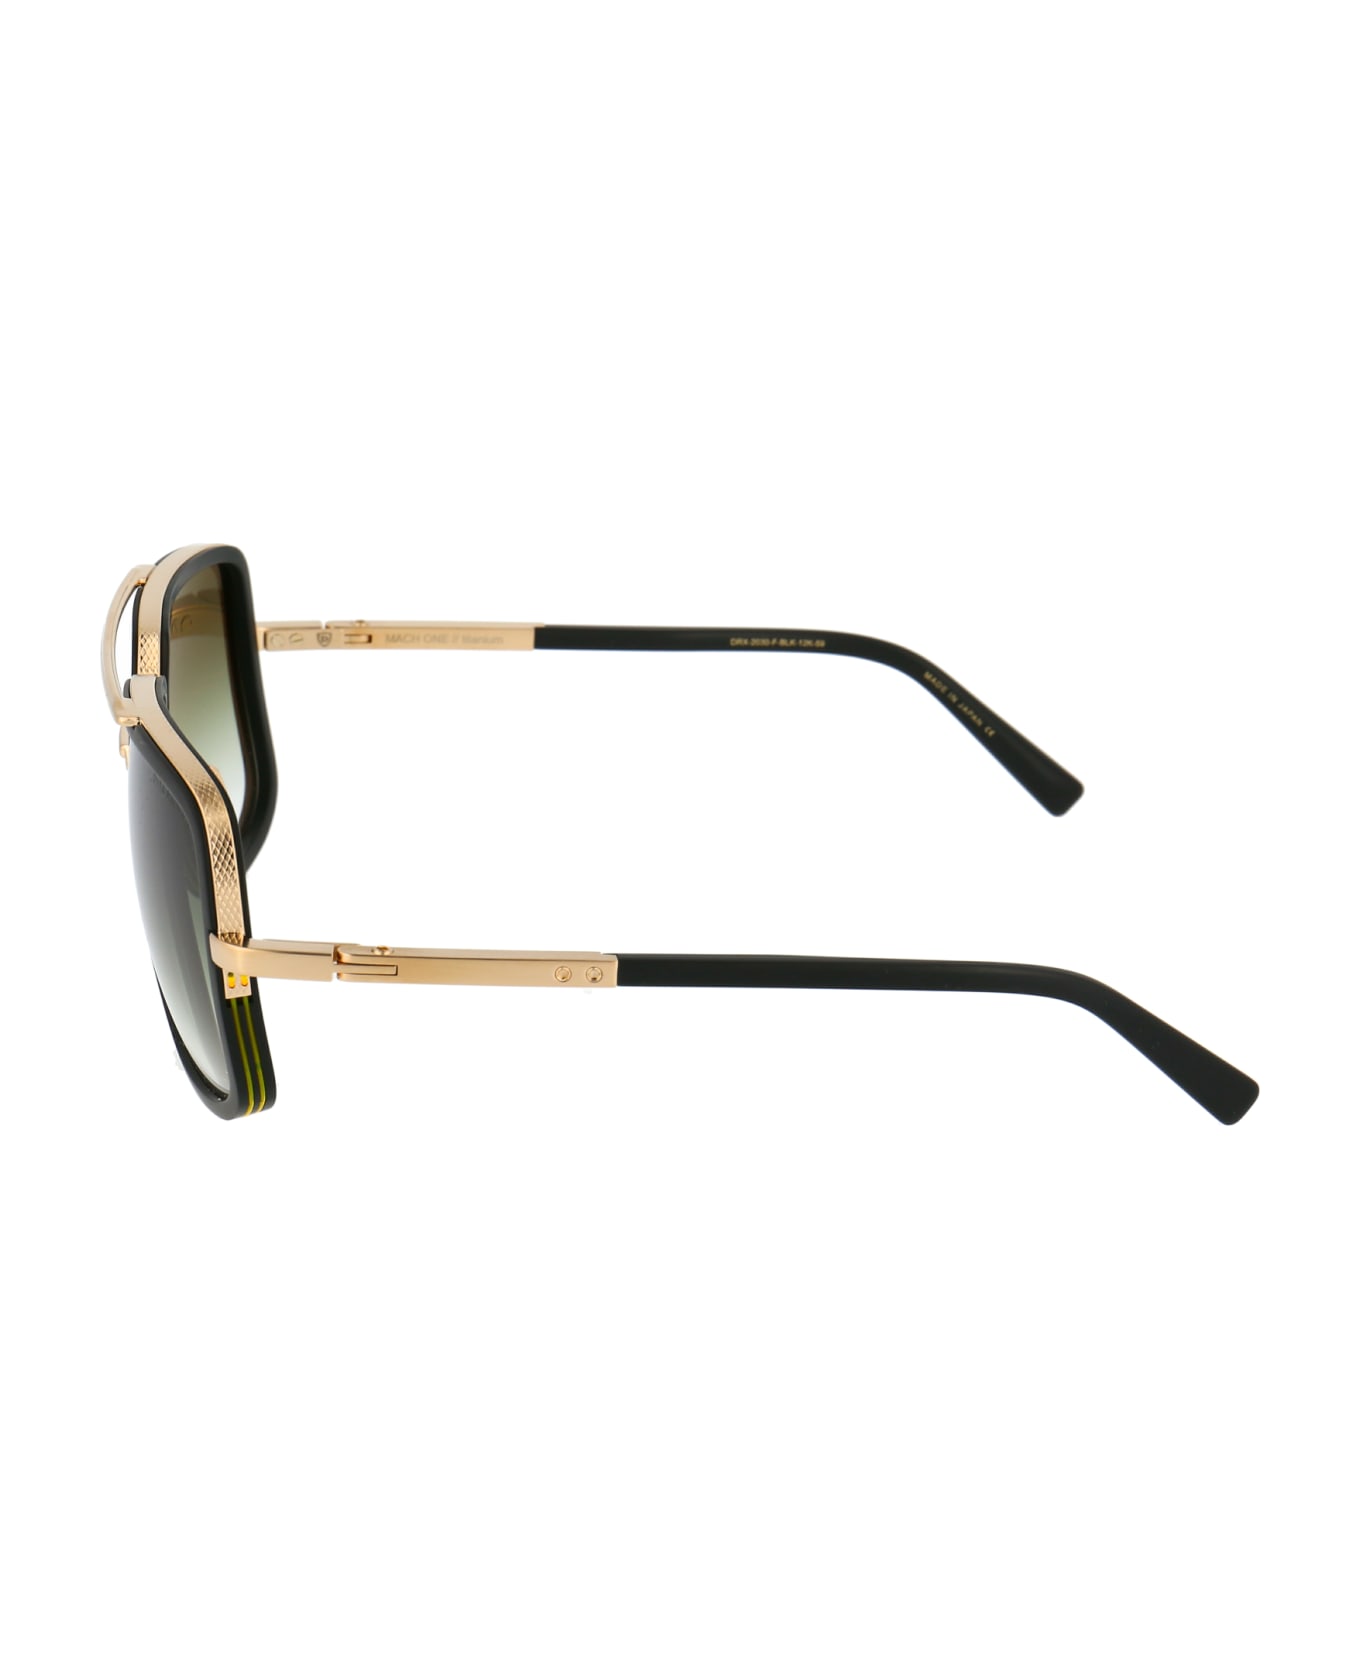 Dita Mach-one Sunglasses - Matte Black-Antique 12K Gold to Clear